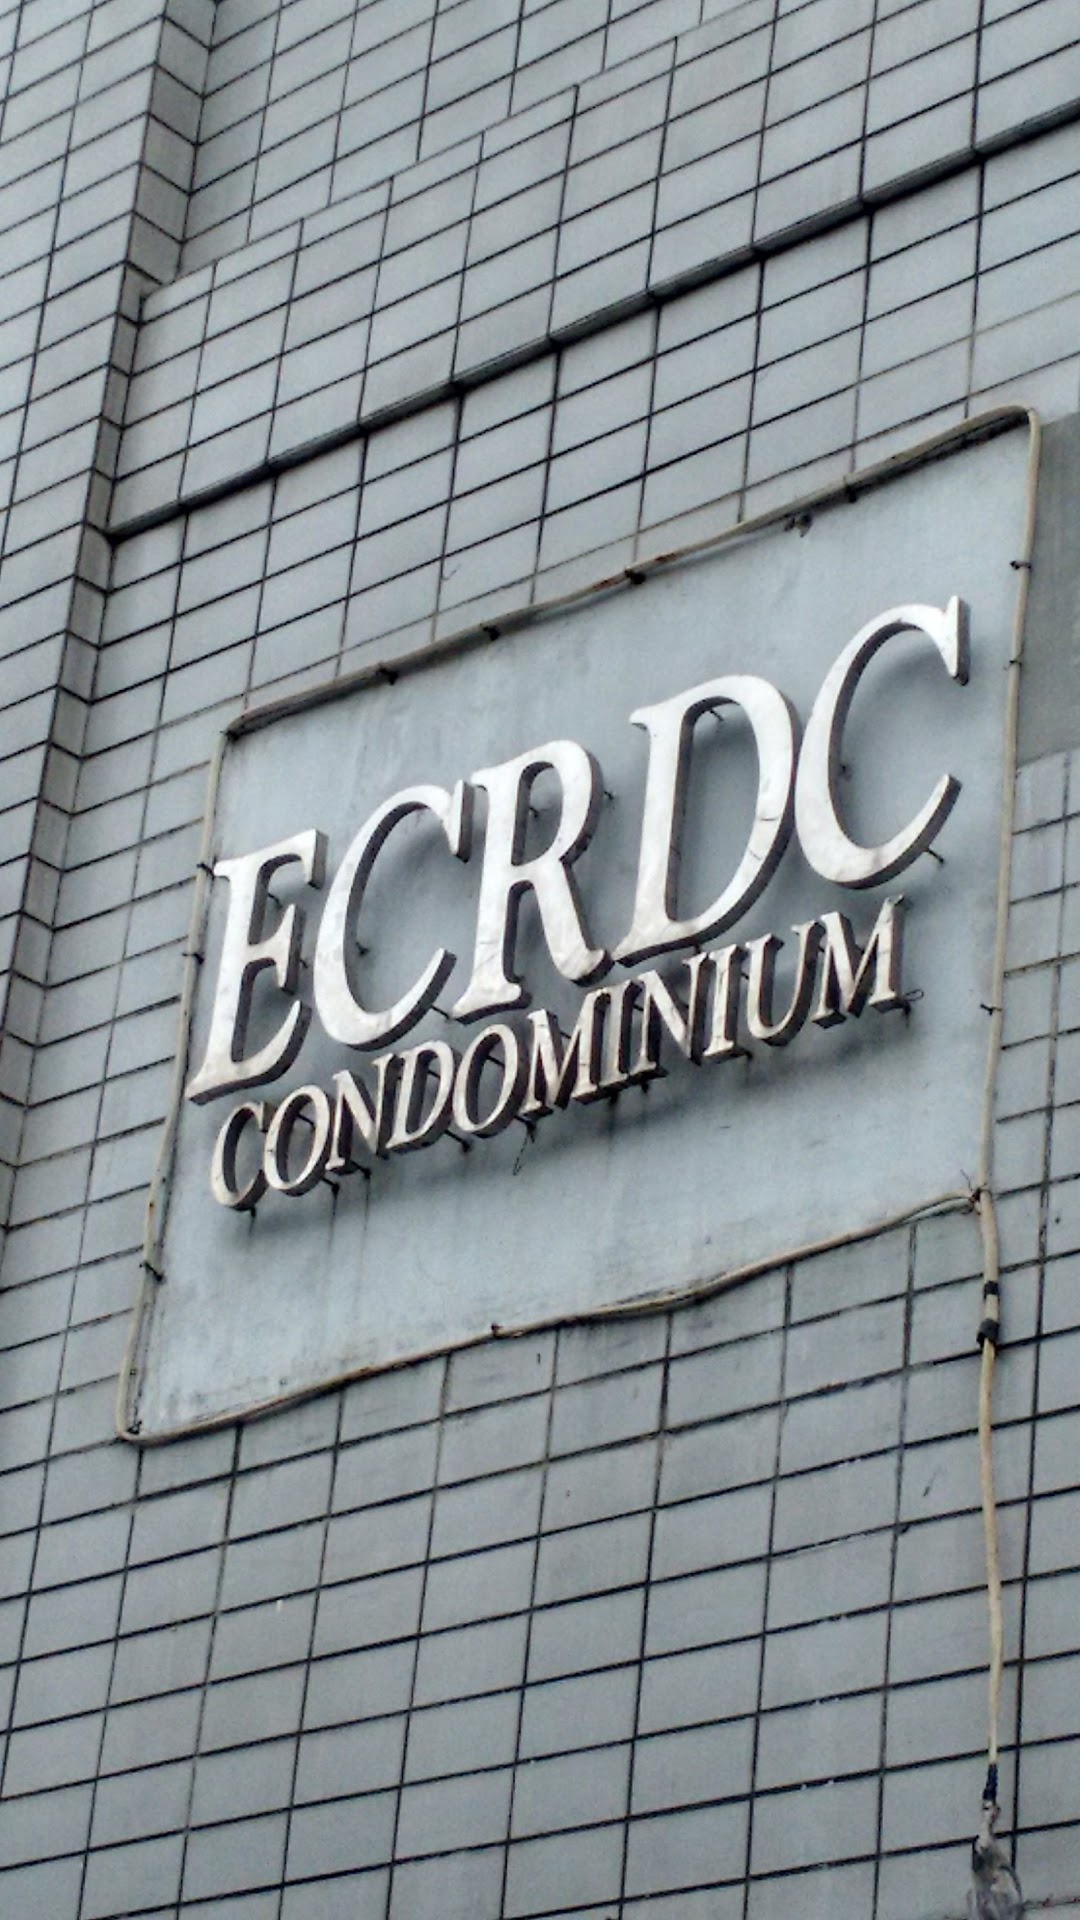 ECRDC Condominium